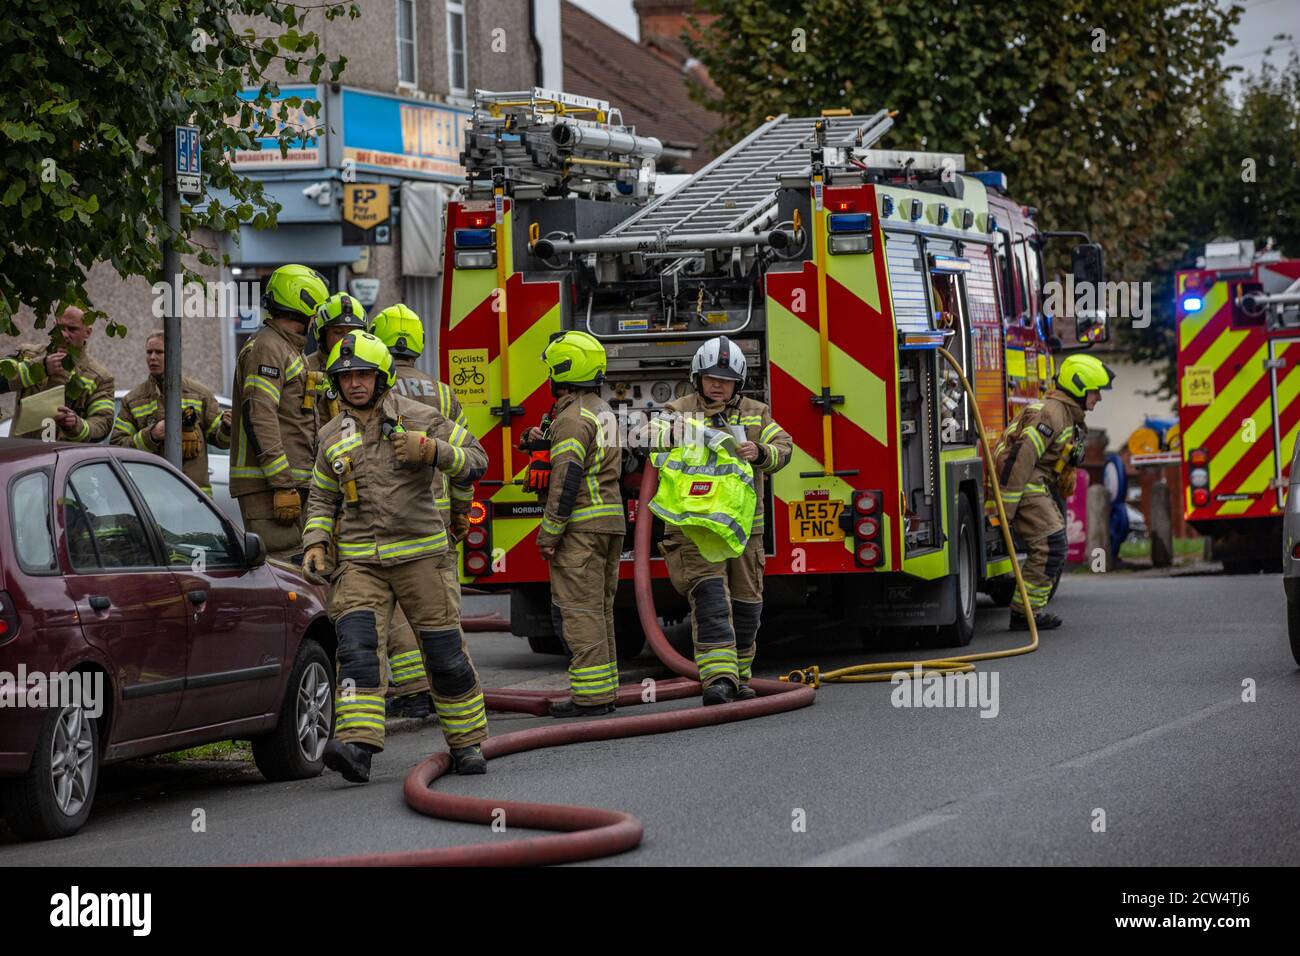 La brigade de pompiers de Londres assiste à un incendie de maison dans une rue résidentielle à Croydon, sud de Londres, Angleterre, Royaume-Uni Banque D'Images